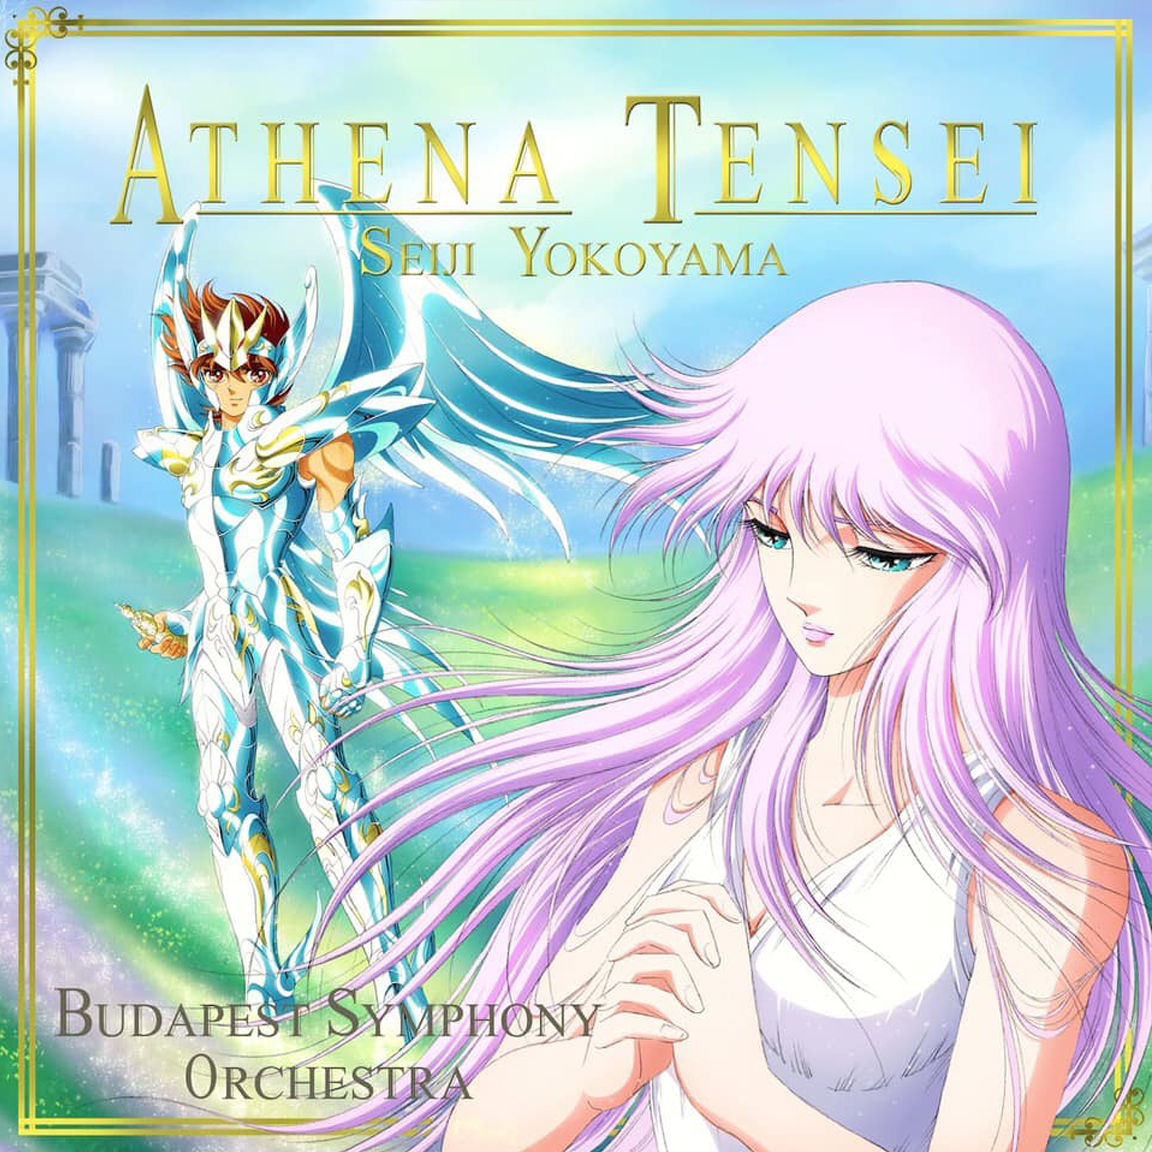 Arte produzida por Spaceweaver para o single "Athena Tensei"